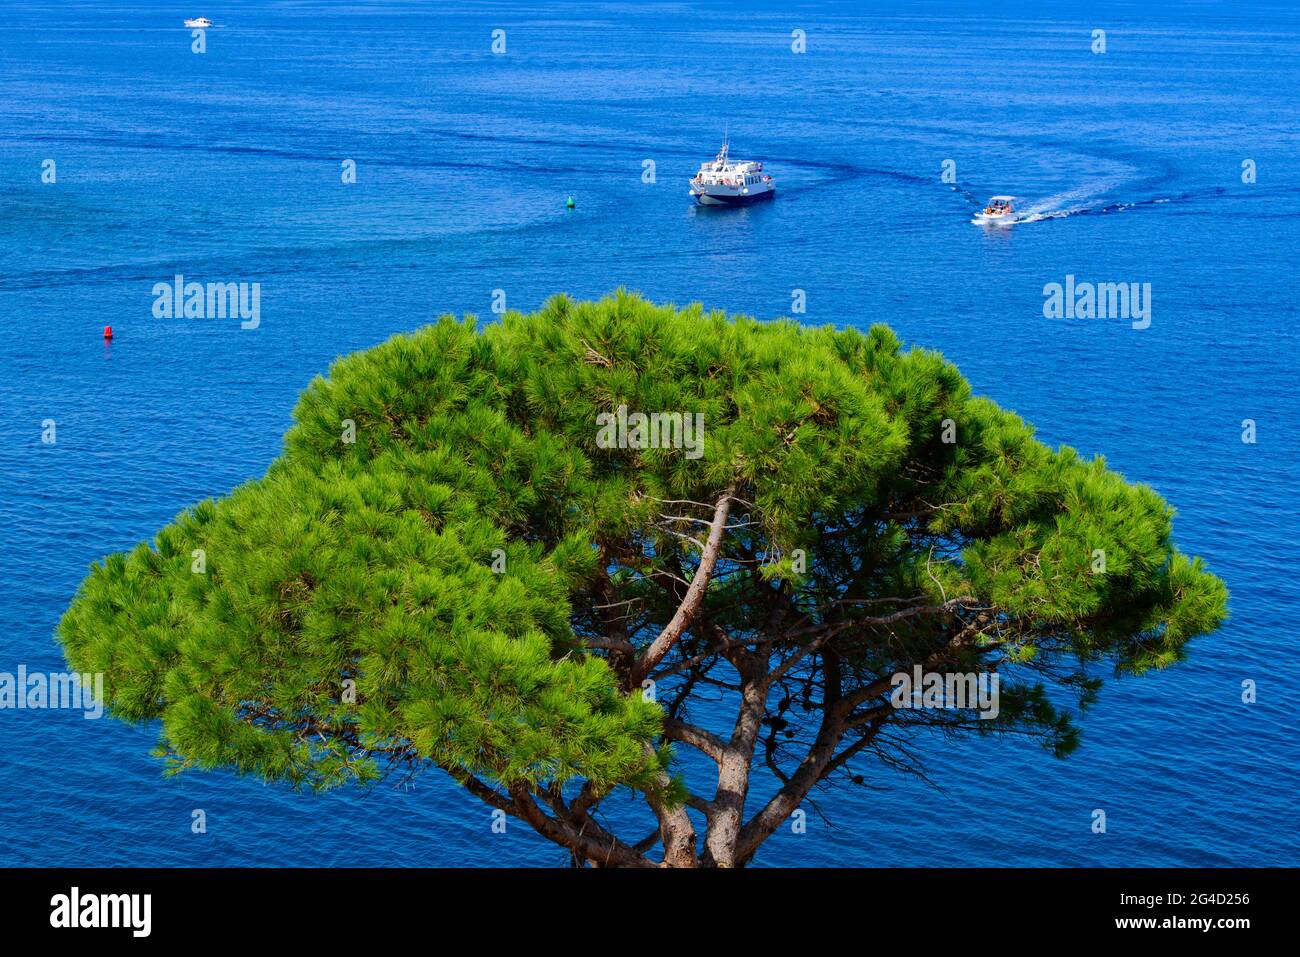 Boote, die auf dem Mittelmeer segeln, mit einem Baum im Vordergrund in Collioure, Frankreich Stockfoto